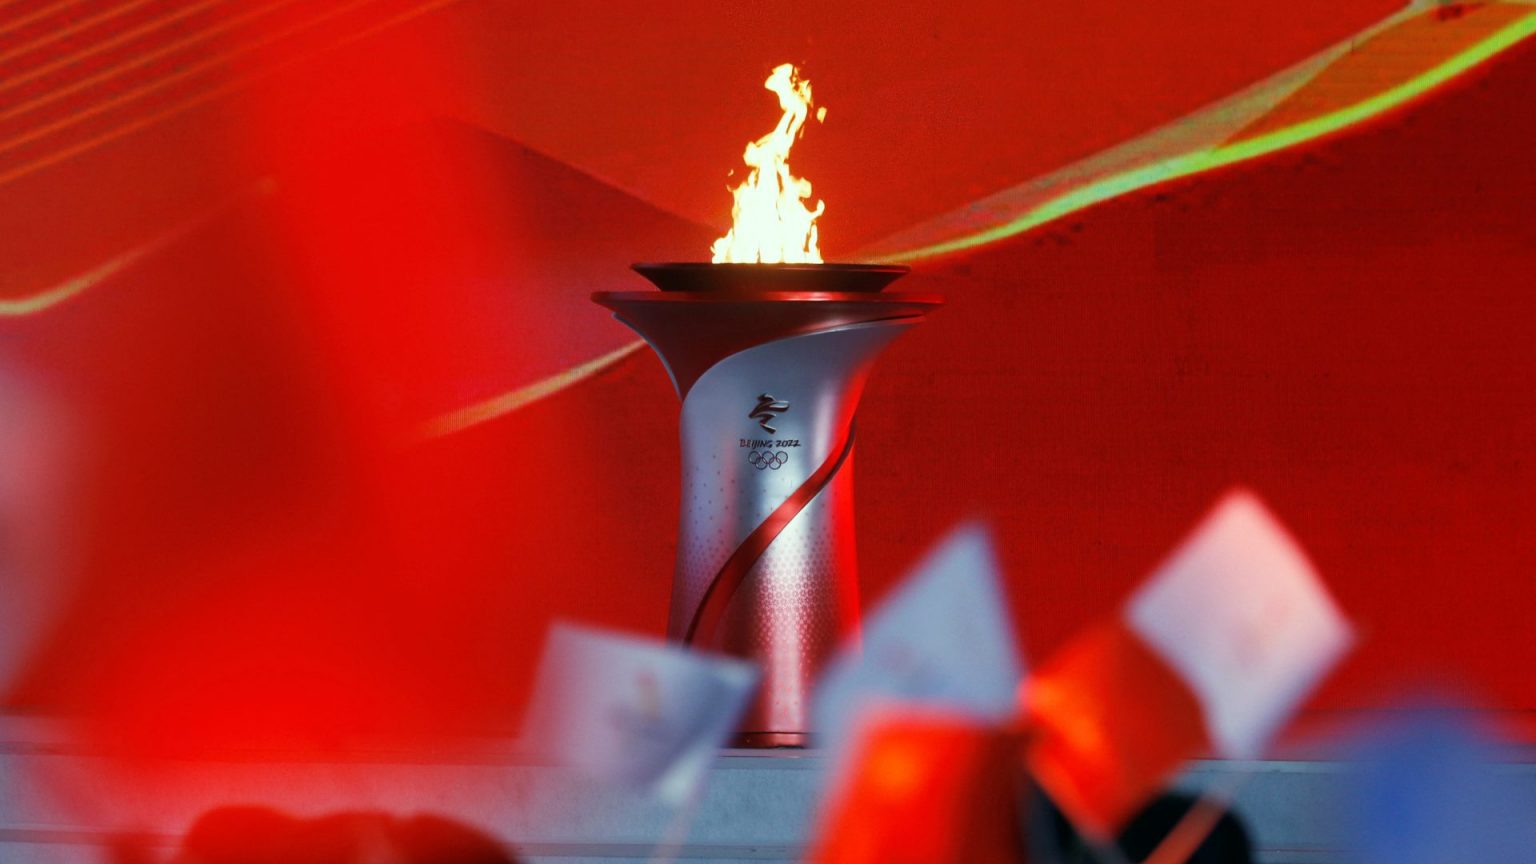 Juegos Olímpicos de Invierno 2022: dónde ver y cuándo empieza la cita de Pekín